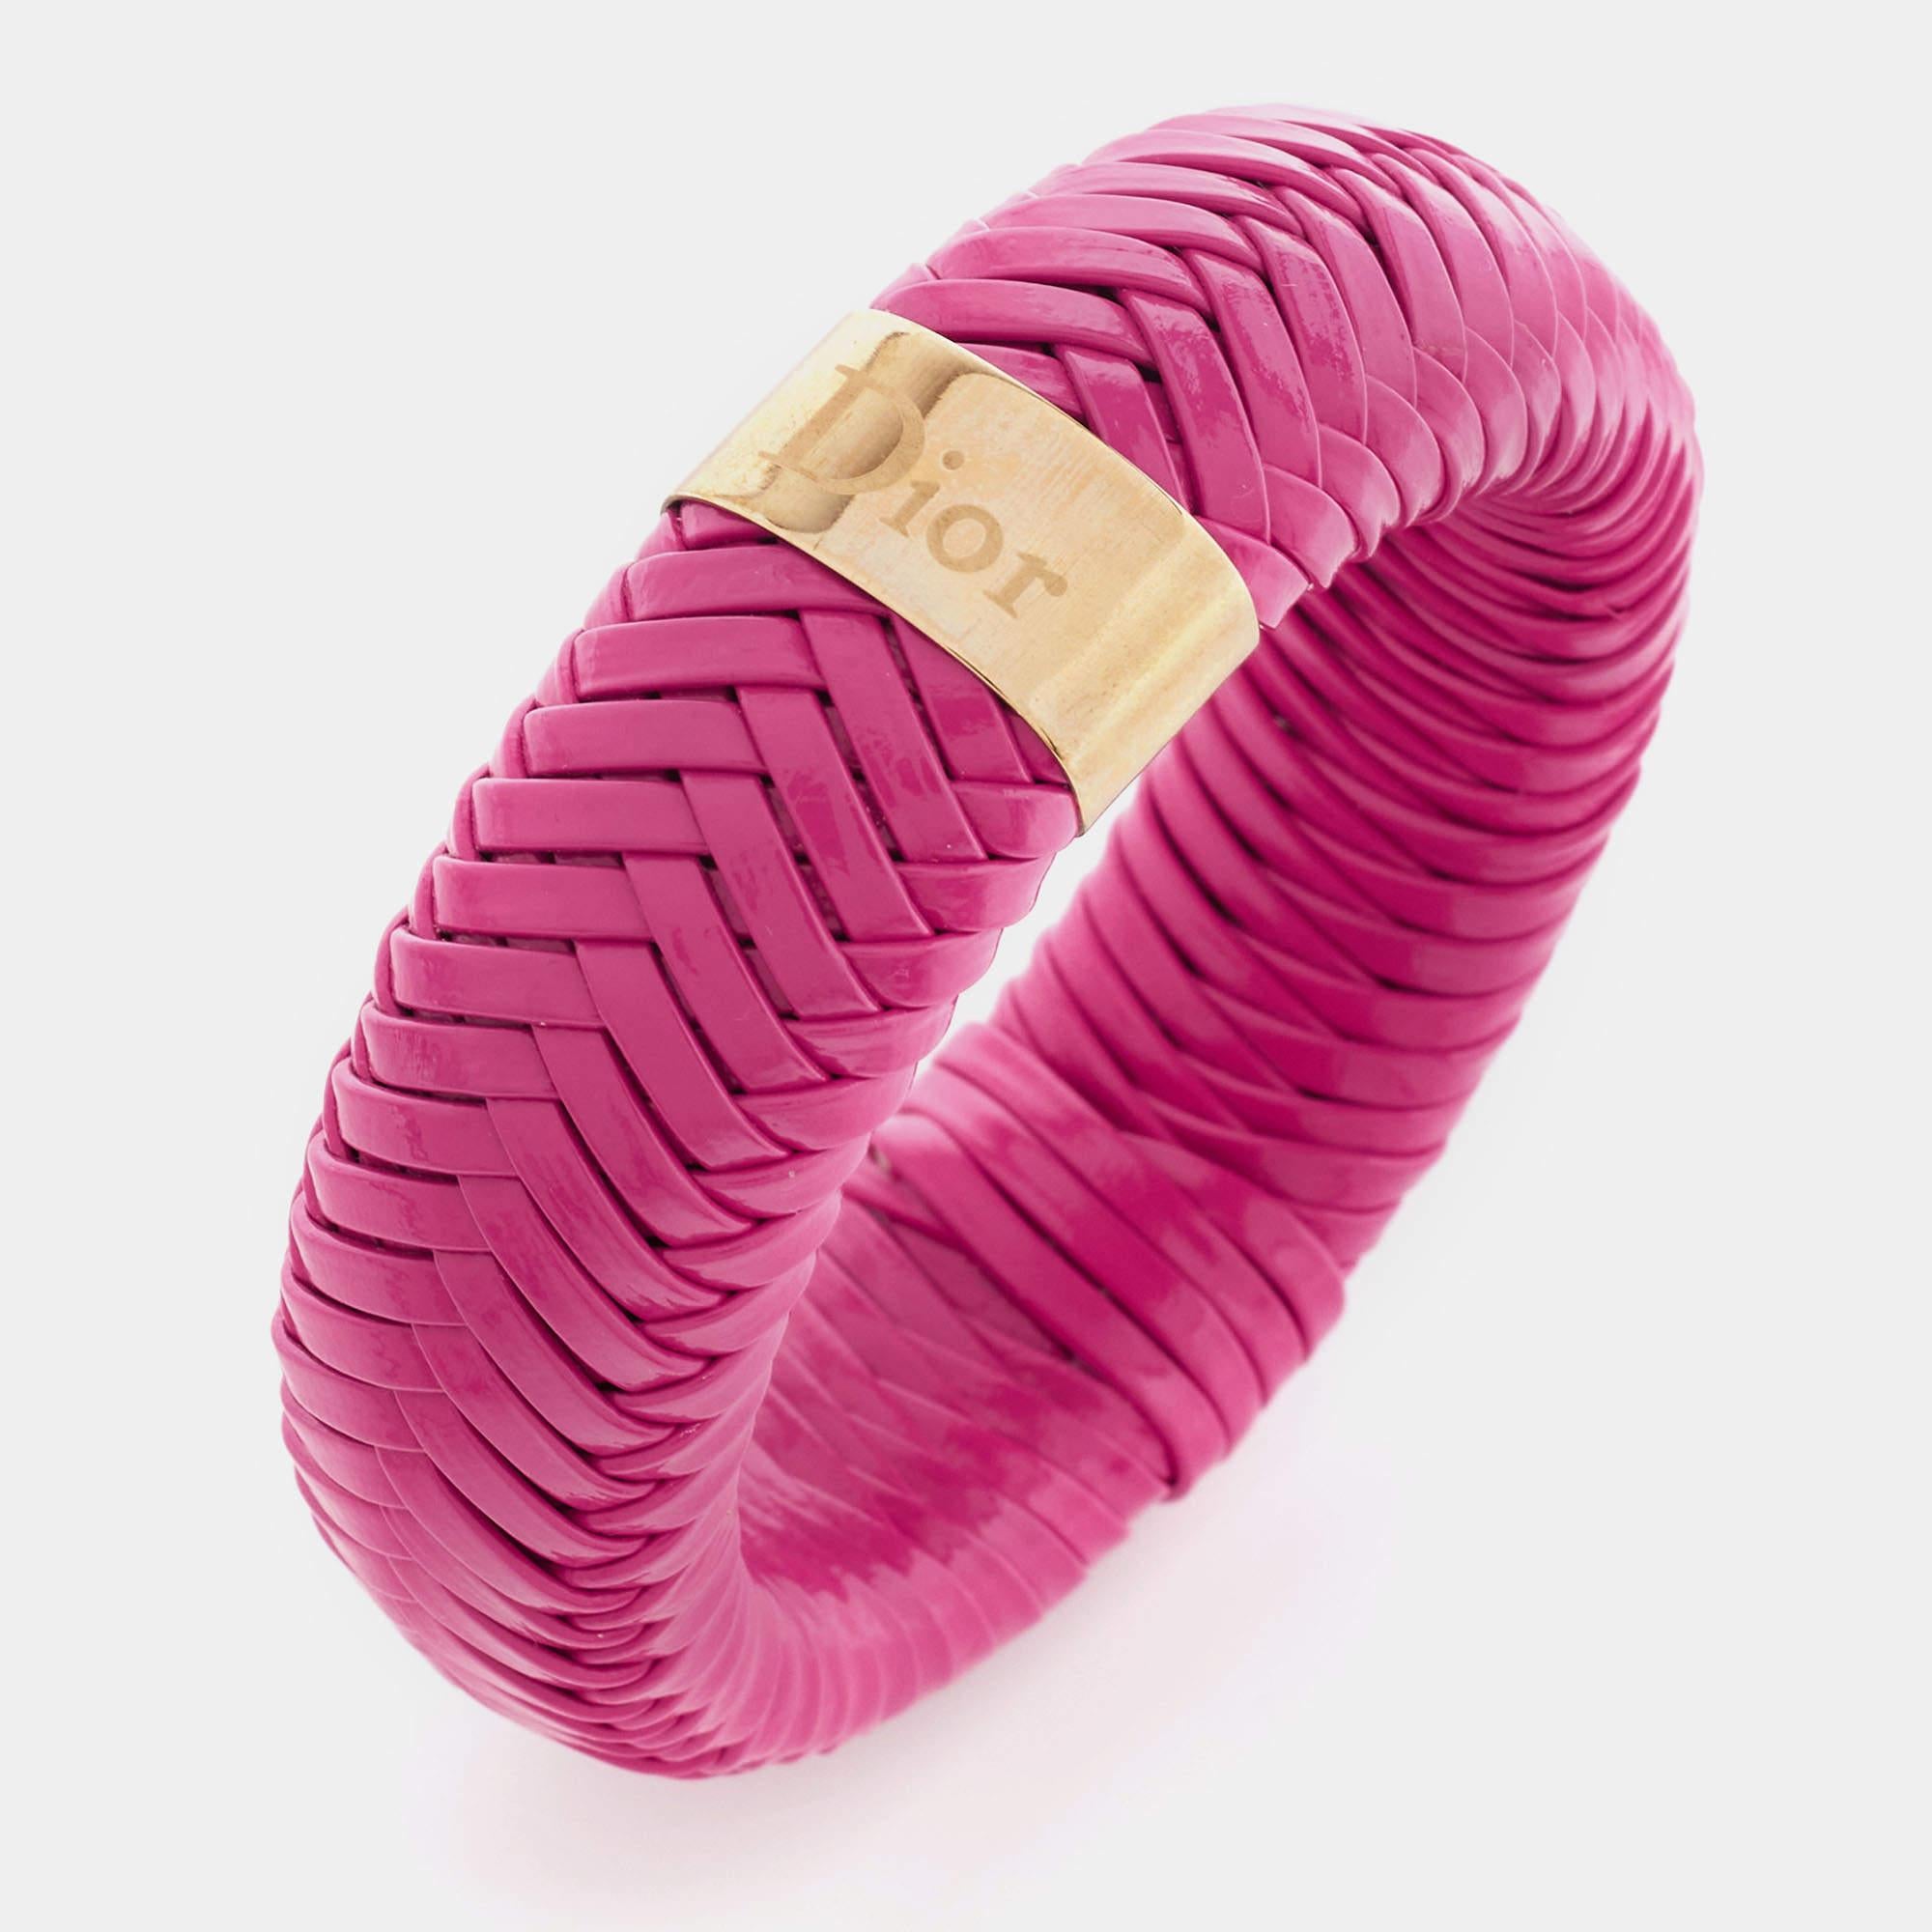 Dieses edle Dior-Armband kann nach dem Kauf immer wieder getragen werden. Es wird nie aus der Mode kommen. Dieses aus Leder gefertigte Armband ist mit vergoldetem Metall verschönert.

